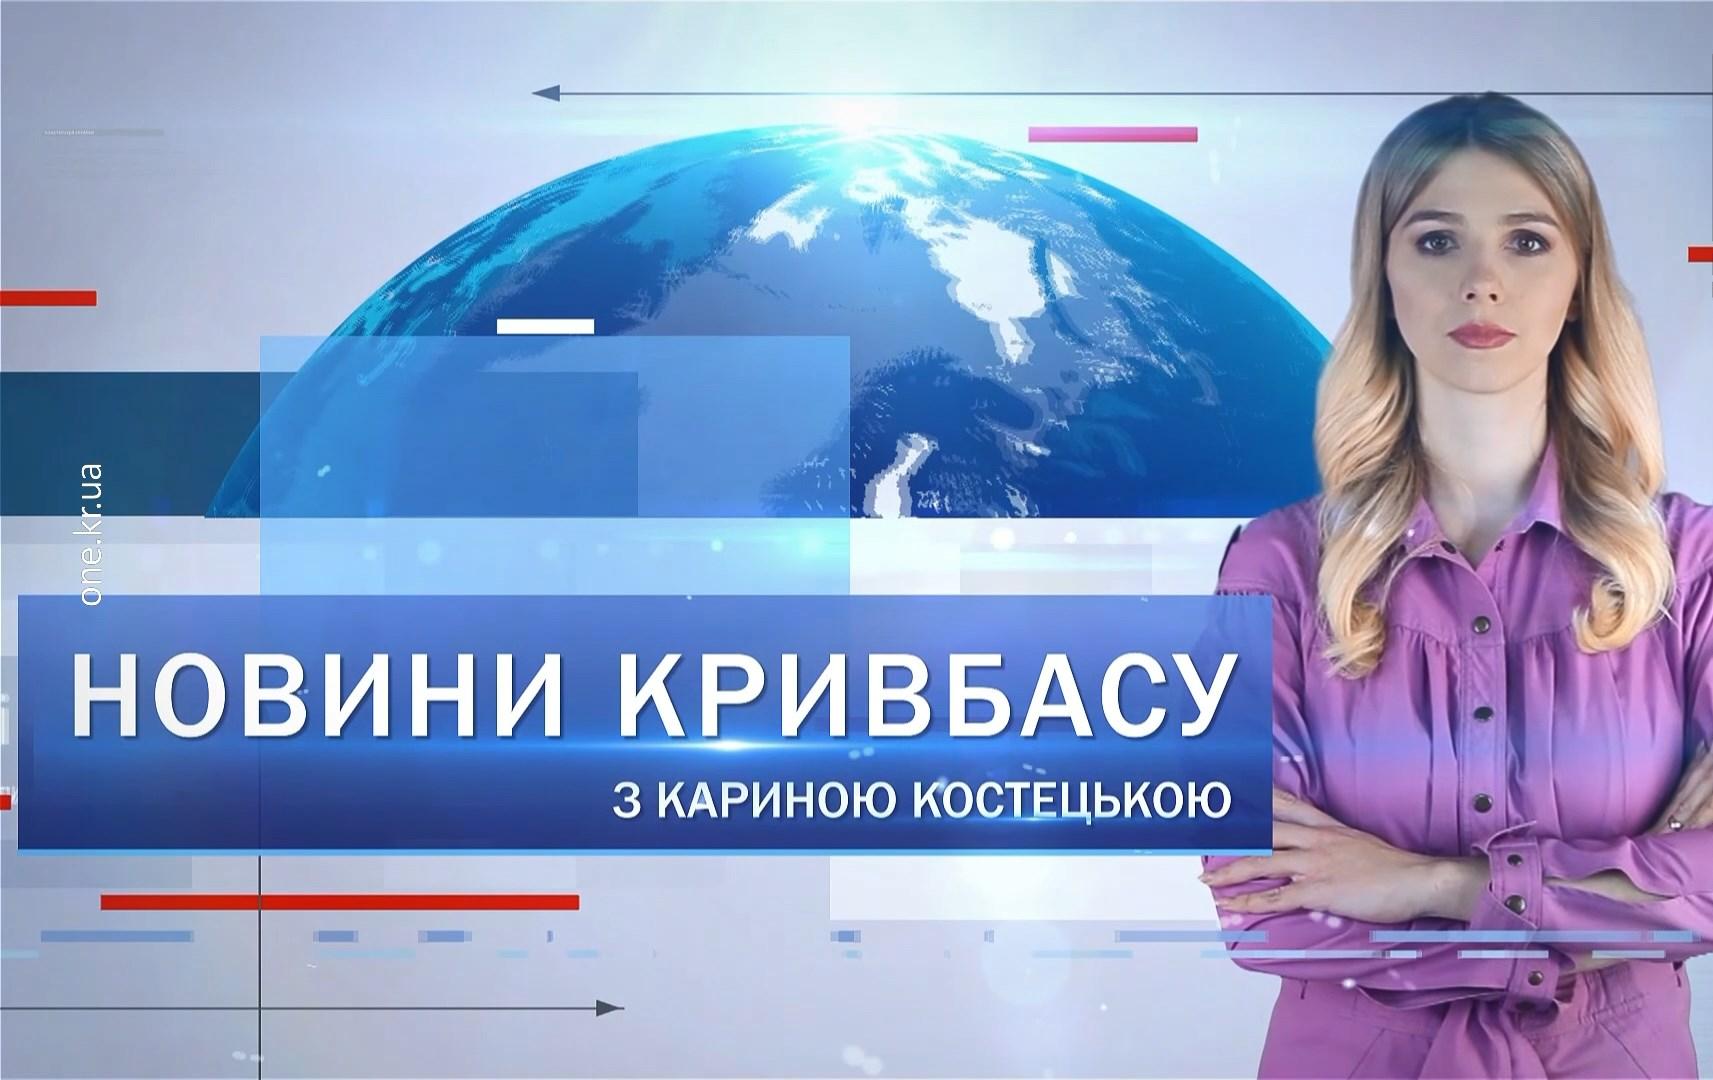 Новини Кривбасу 16 травня: контакт-центр, допомога ОТГ Херсонщини, благодійни забіг